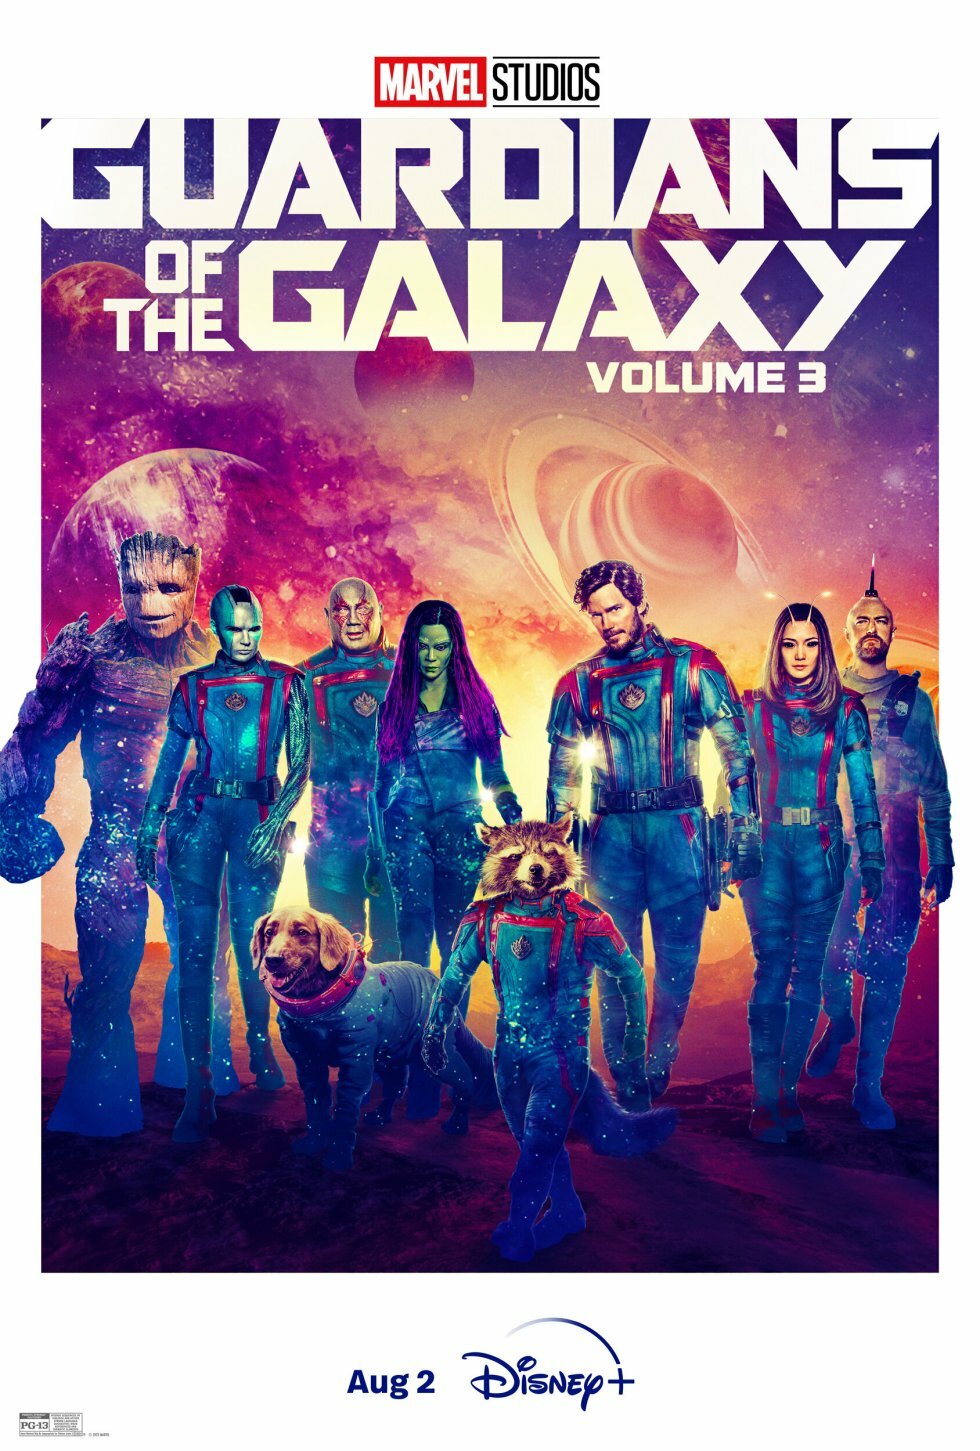 Guardians of the Galaxy Vol. 3 er klar til streaming om lidt